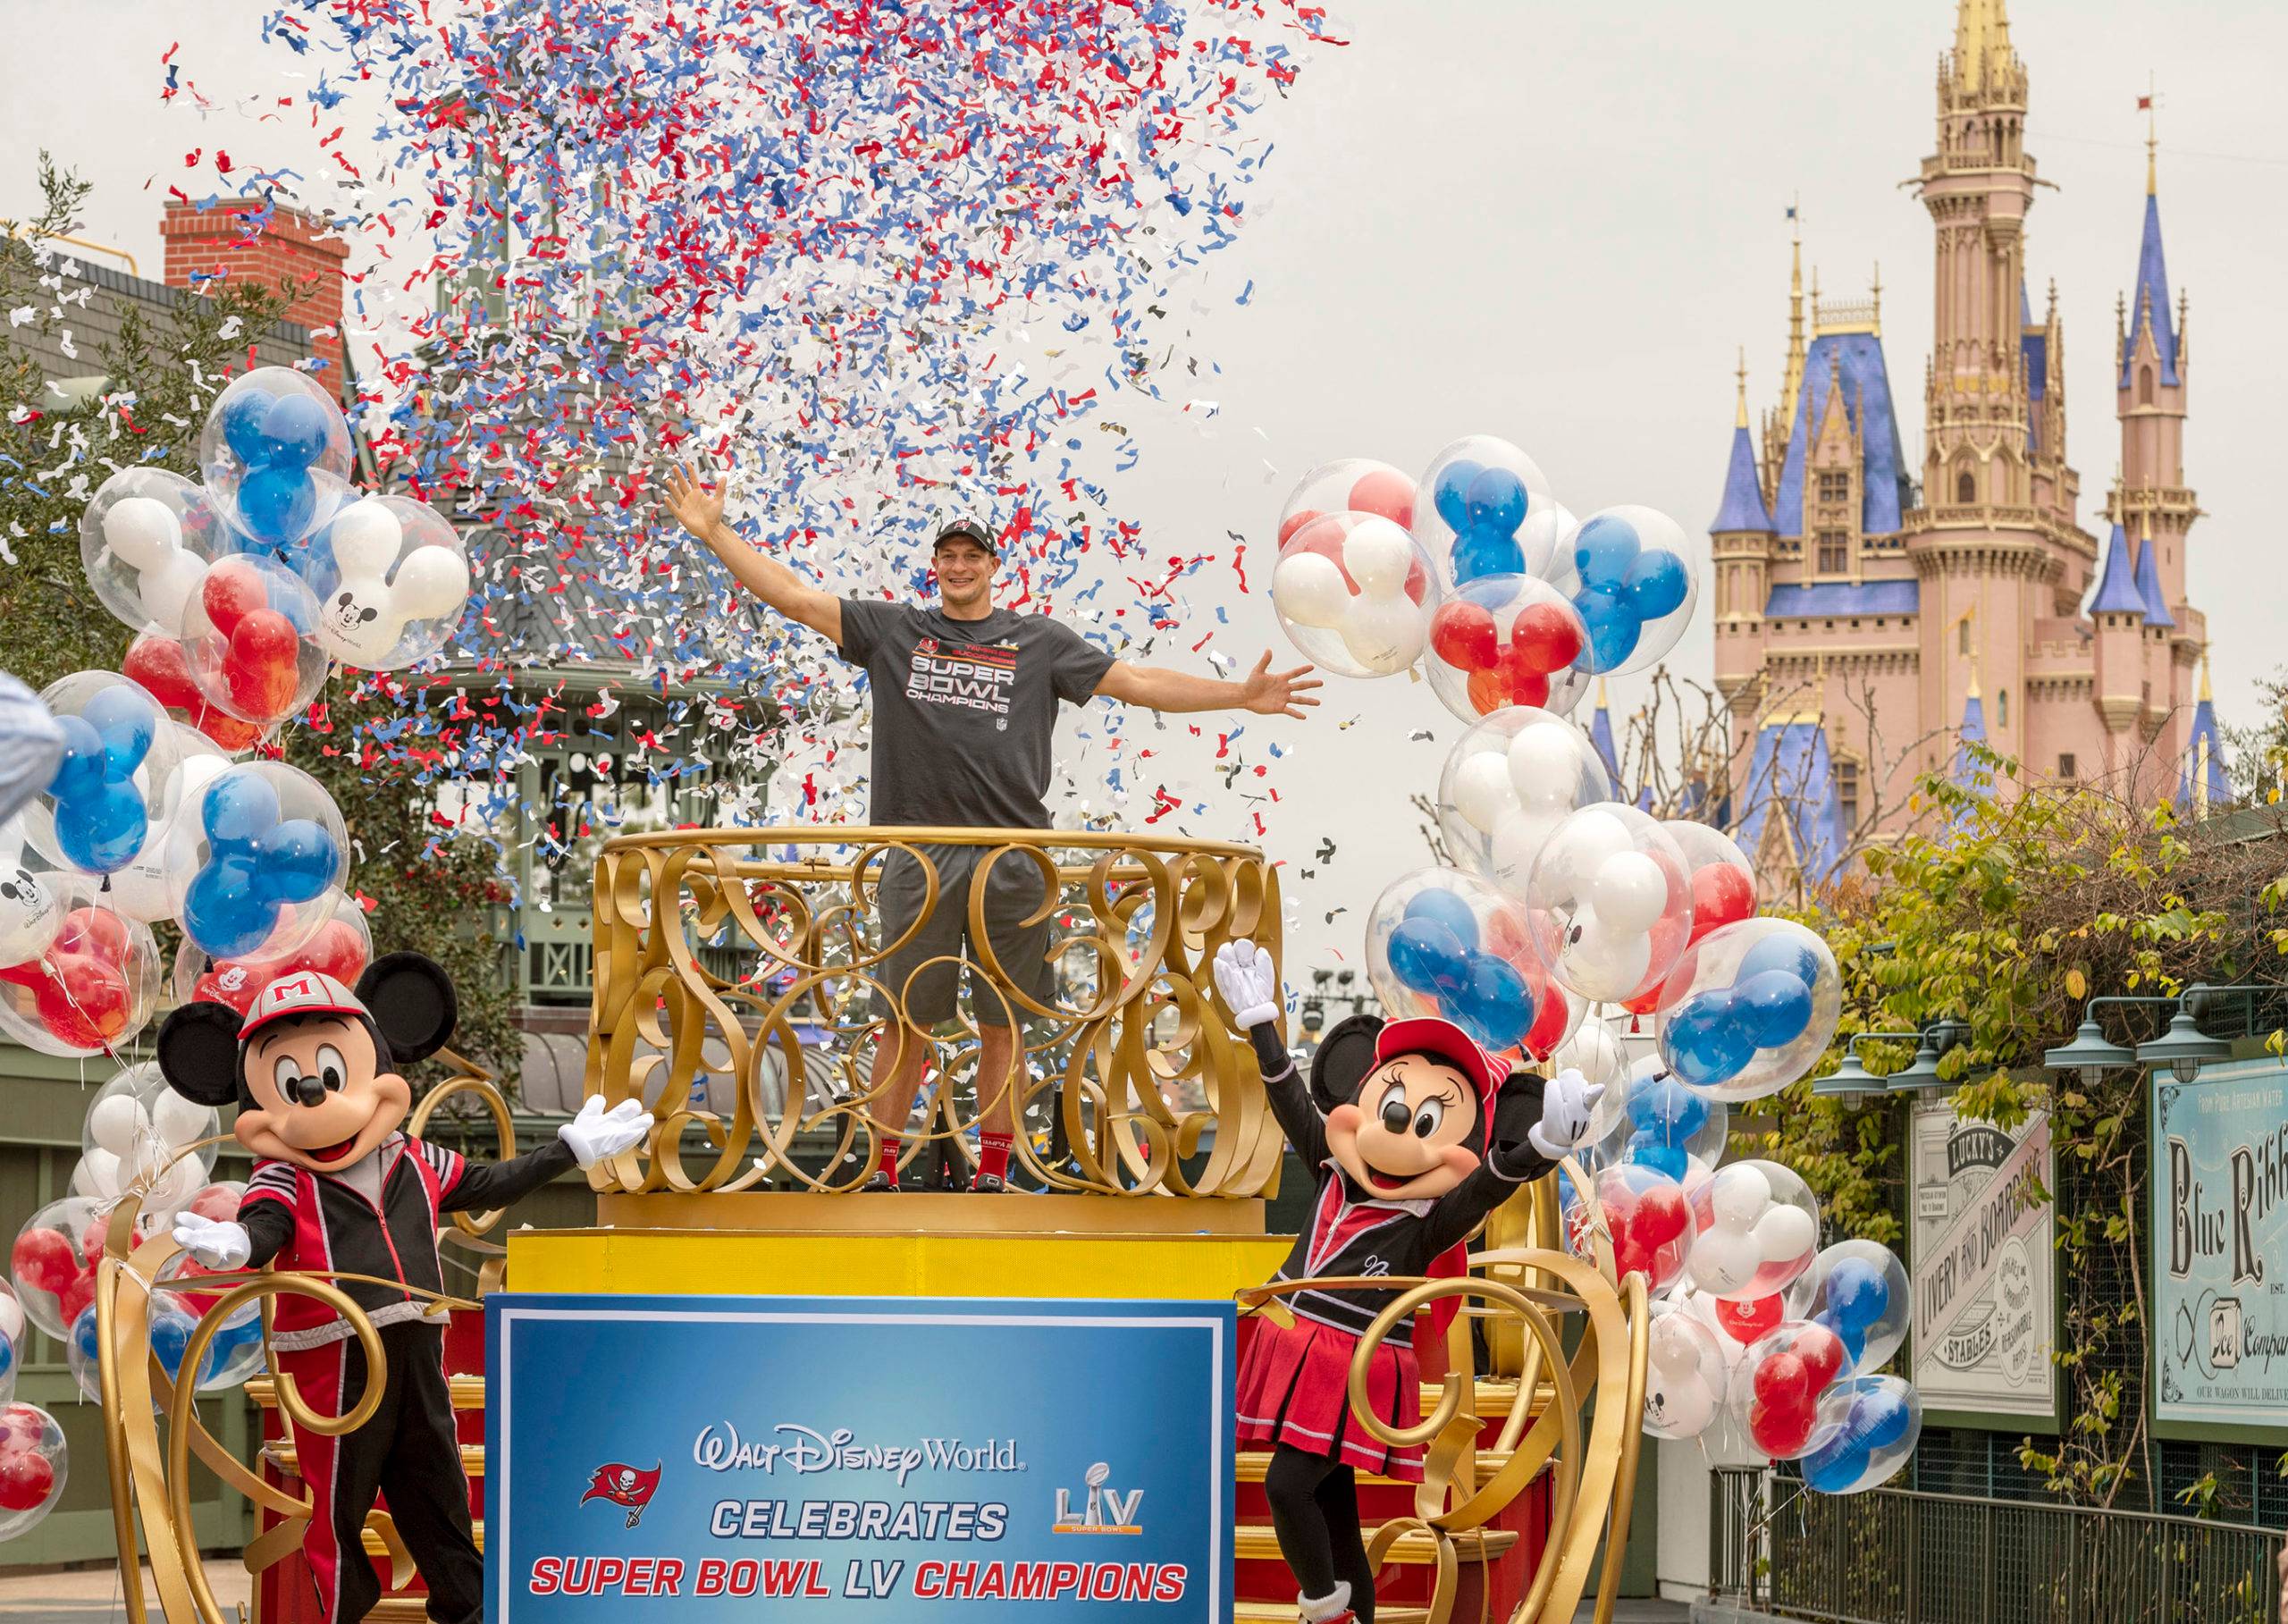 Rob Gronkowski visits Walt Disney World after Super Bowl LV